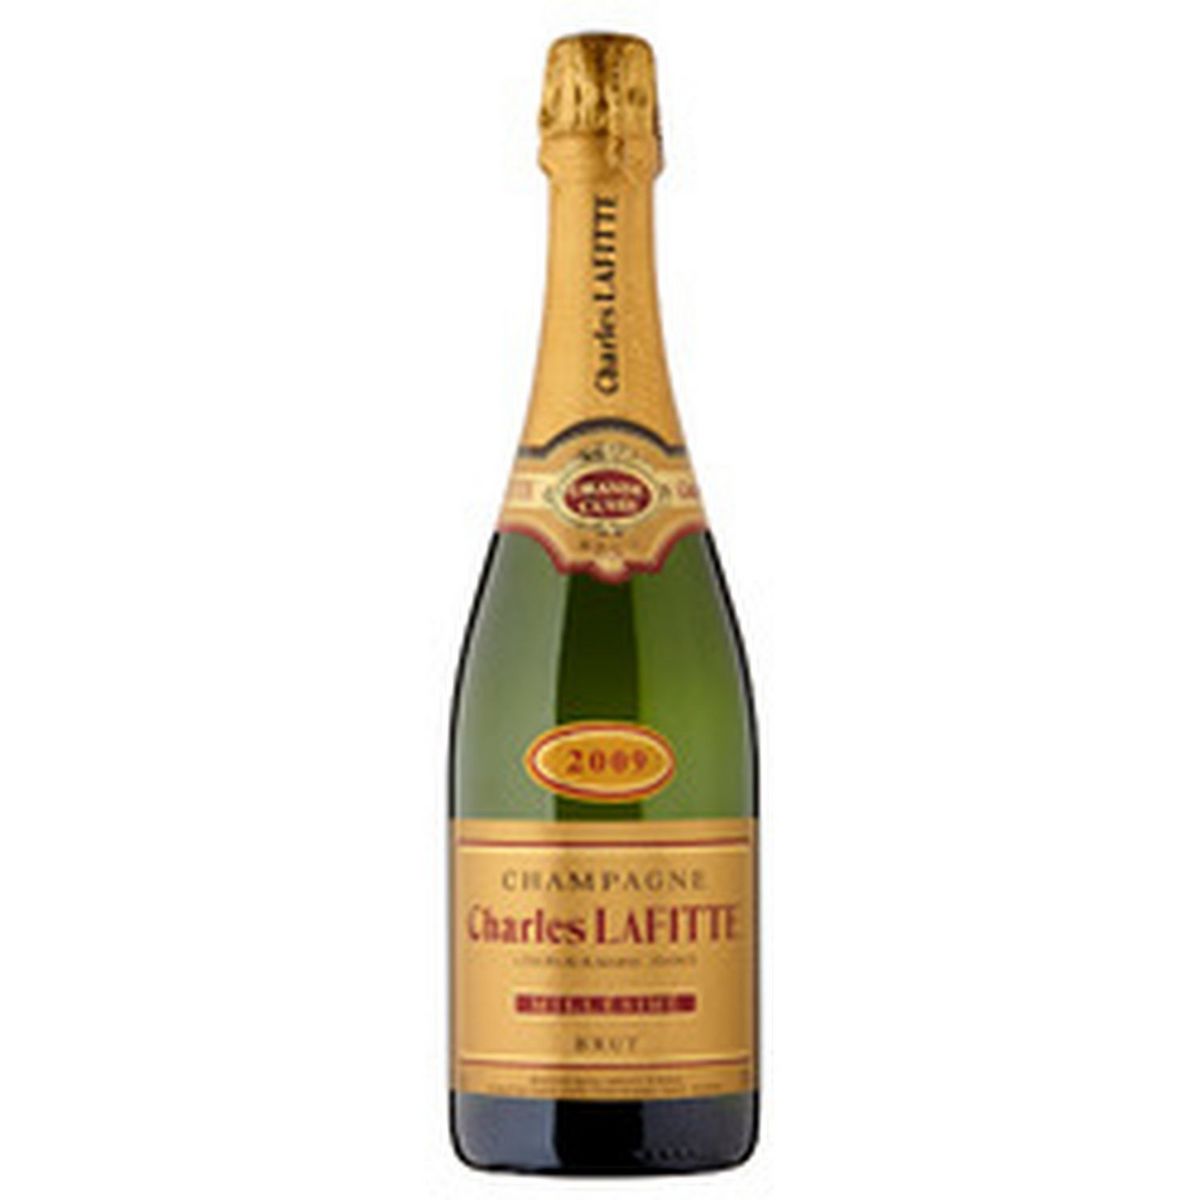 CHARLES LAFITTE AOP Champagne brut millésimé 2010 75cl